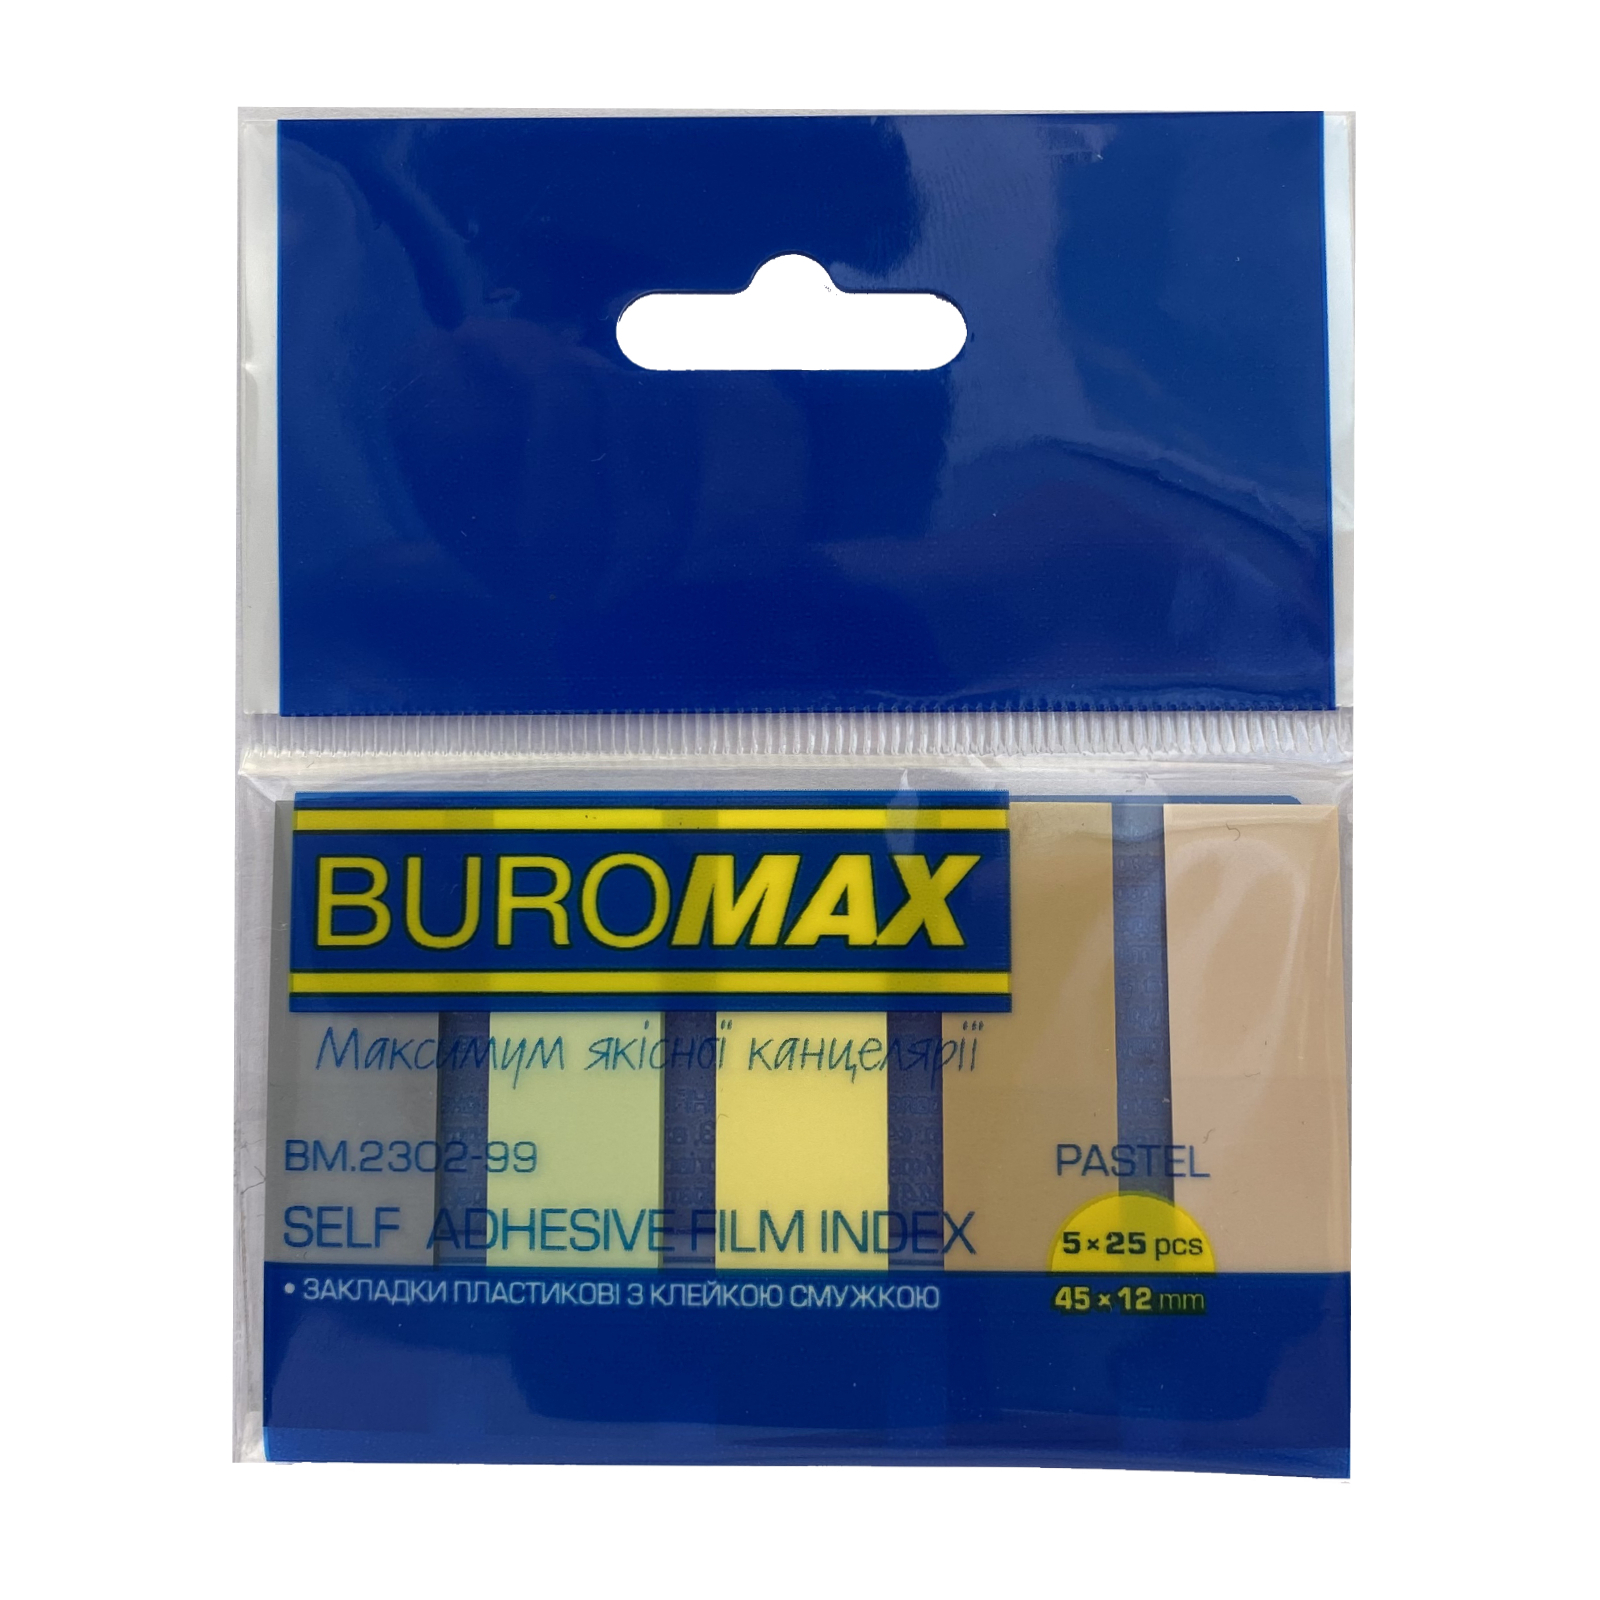 Стикер-закладка Buromax Plastic PASTEL 45x12mm, 5х25шт (BM.2302-99)